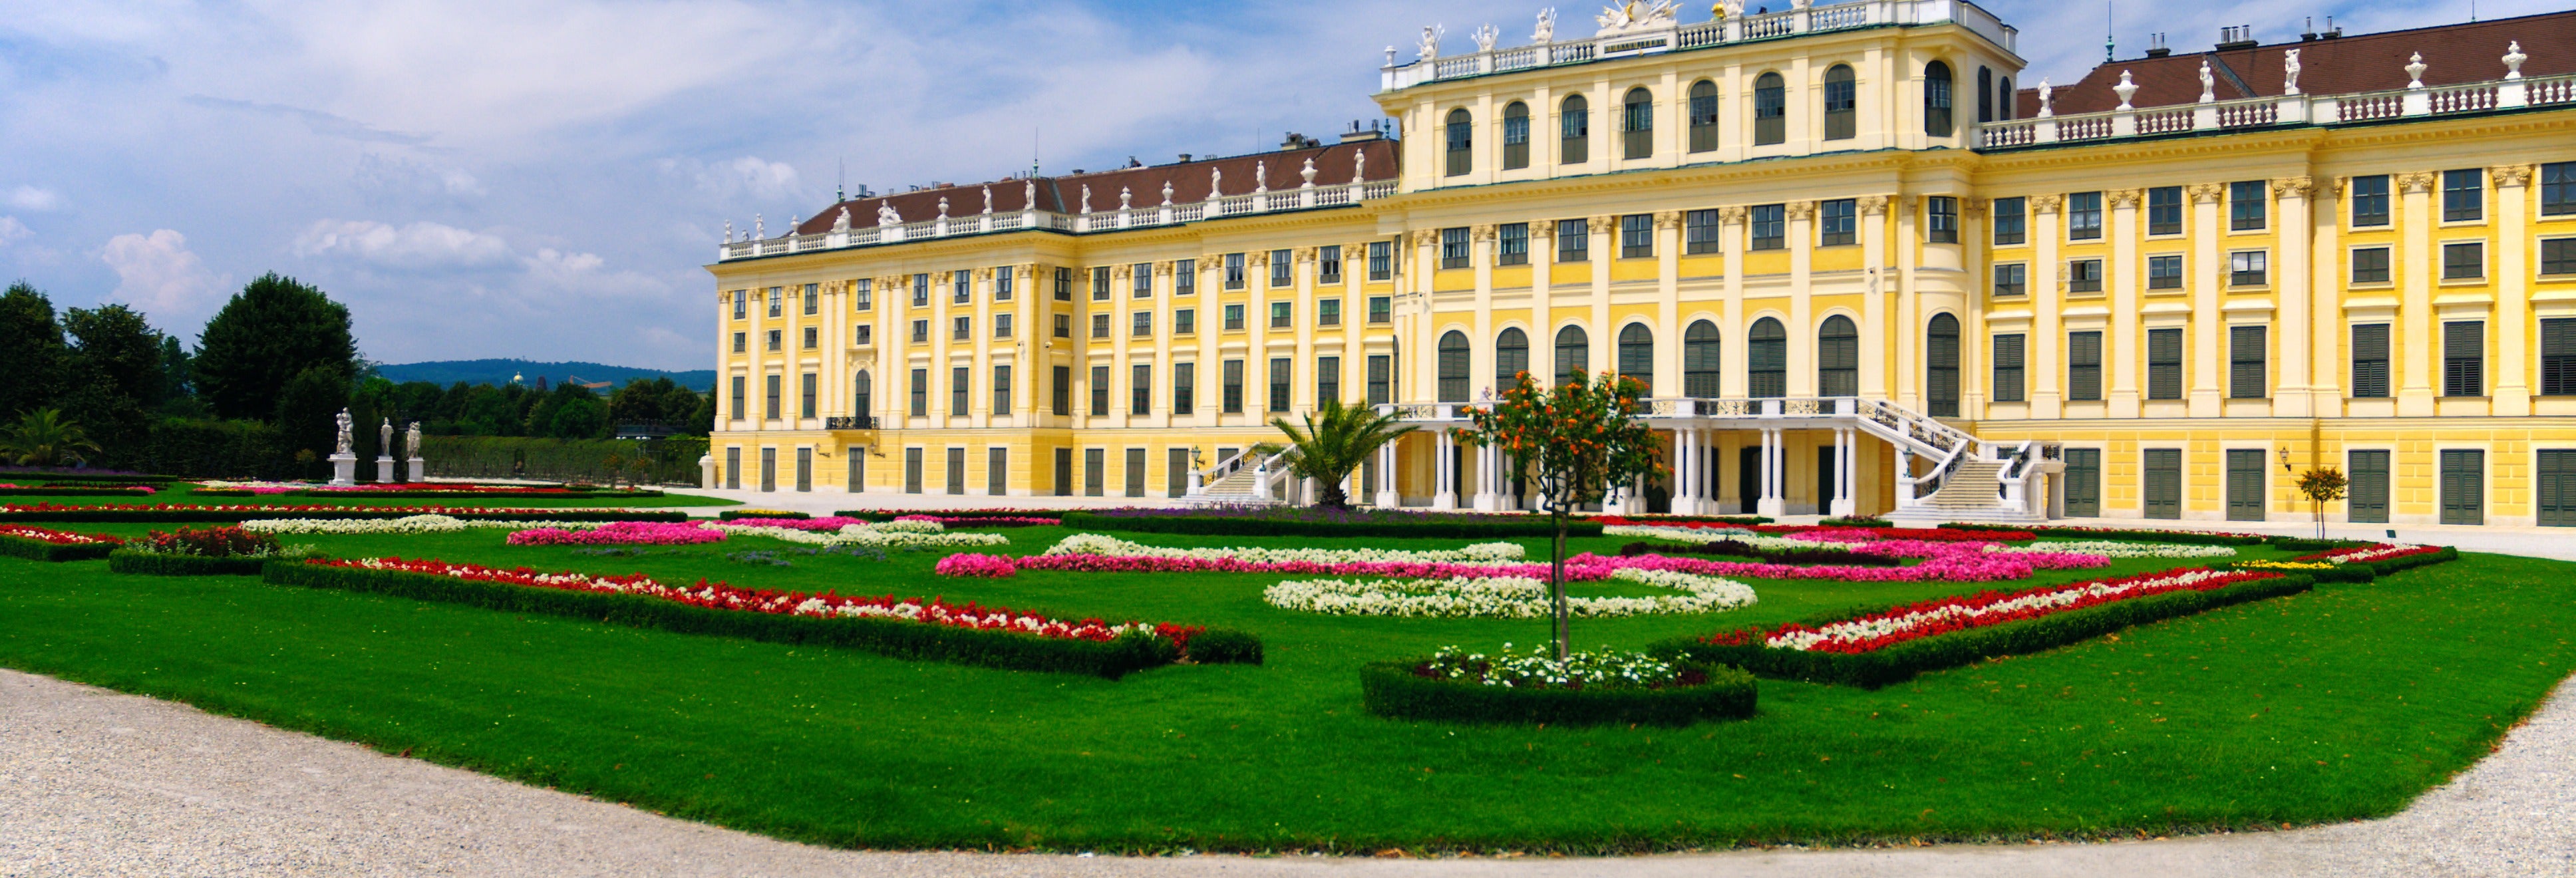 Tour por Viena e Palácio Schönbrunn